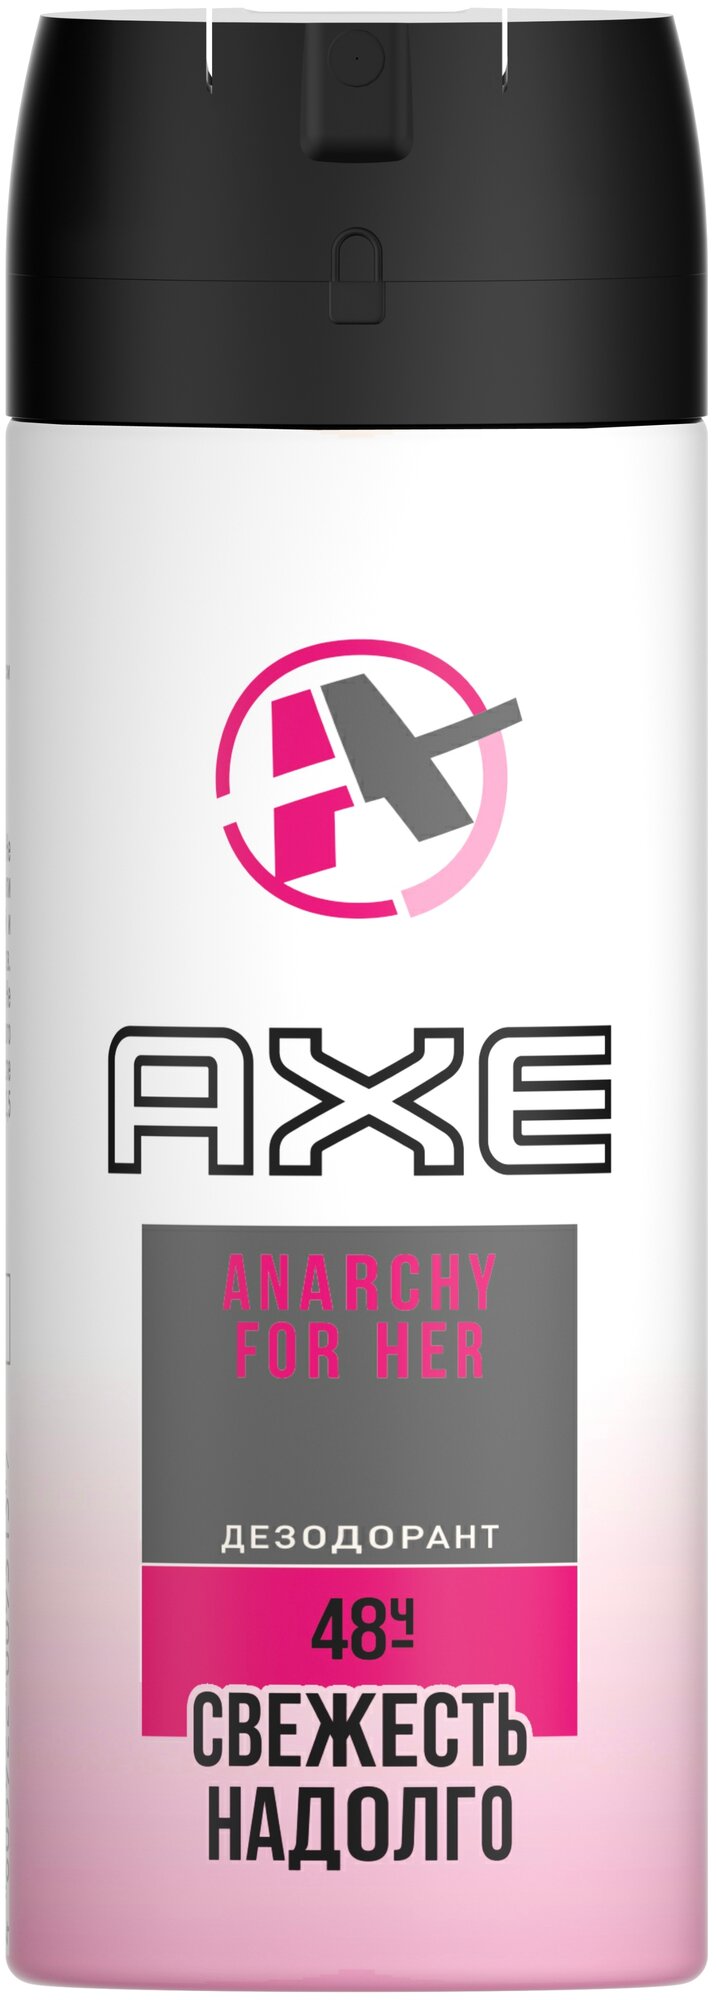 Axe дезодорант Anarchy for her, спрей, 150 мл, 1 шт.